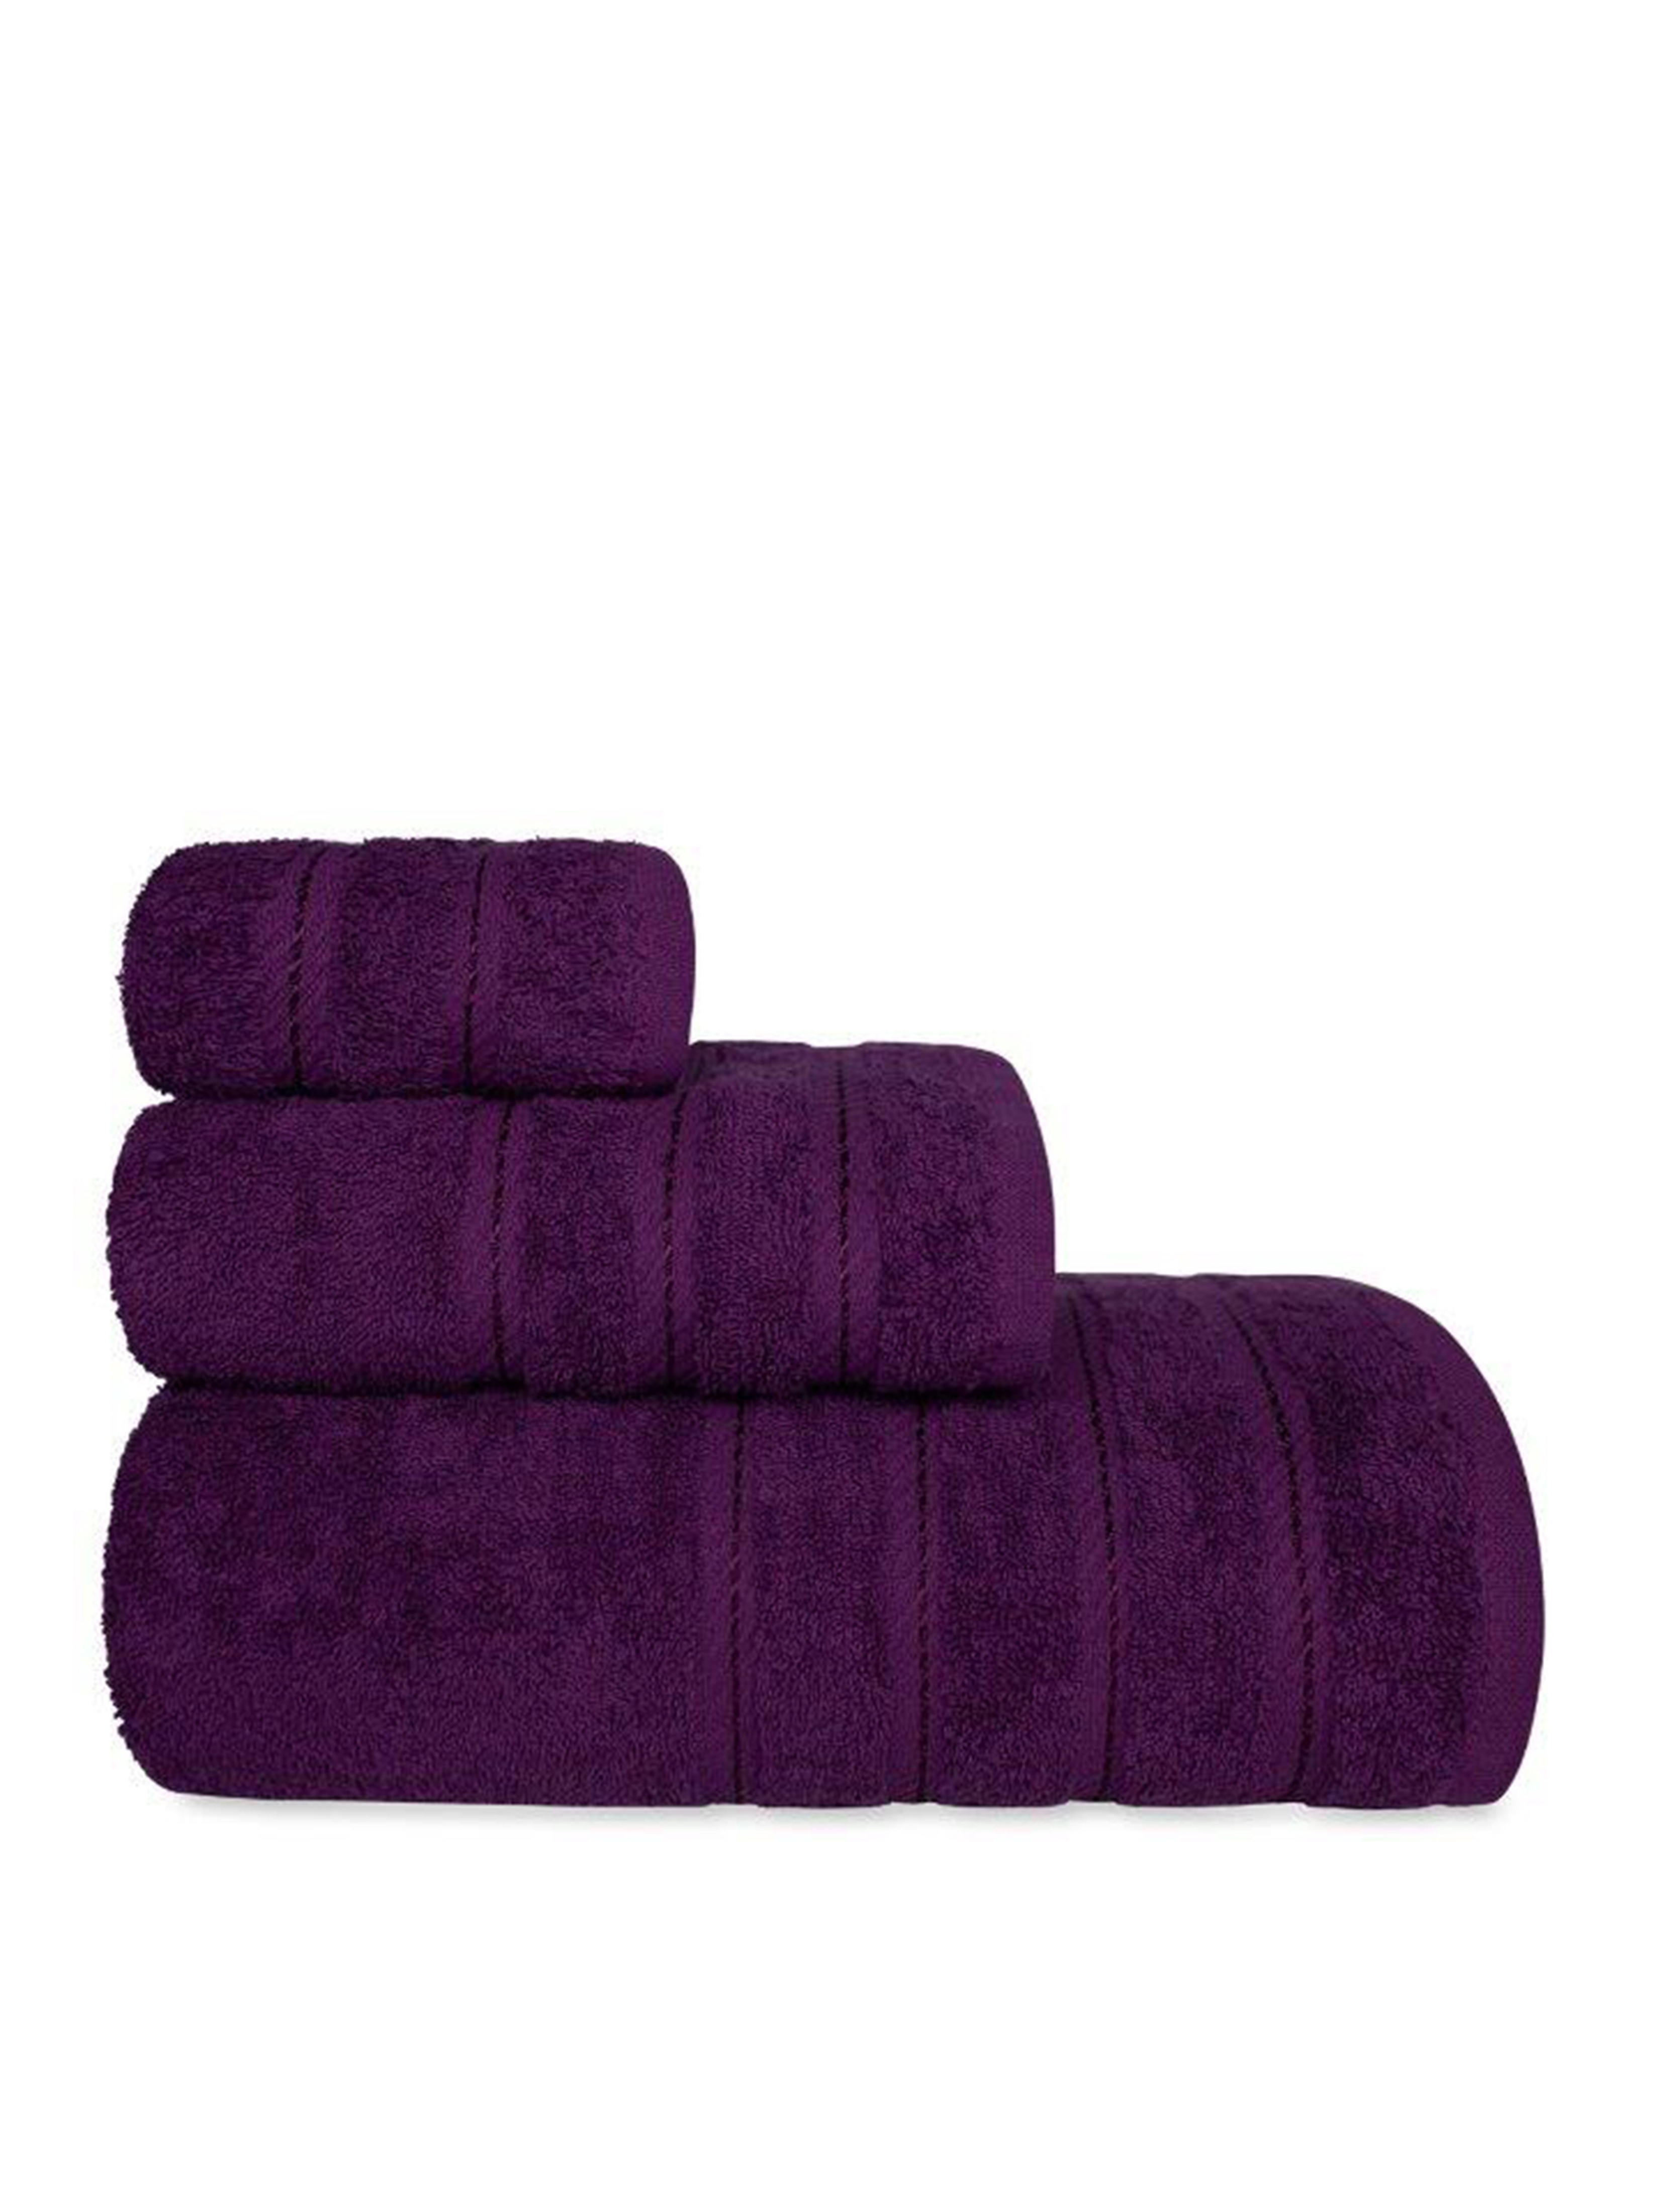 Bawełniany ręcznik 70x140 ciemny fiolet